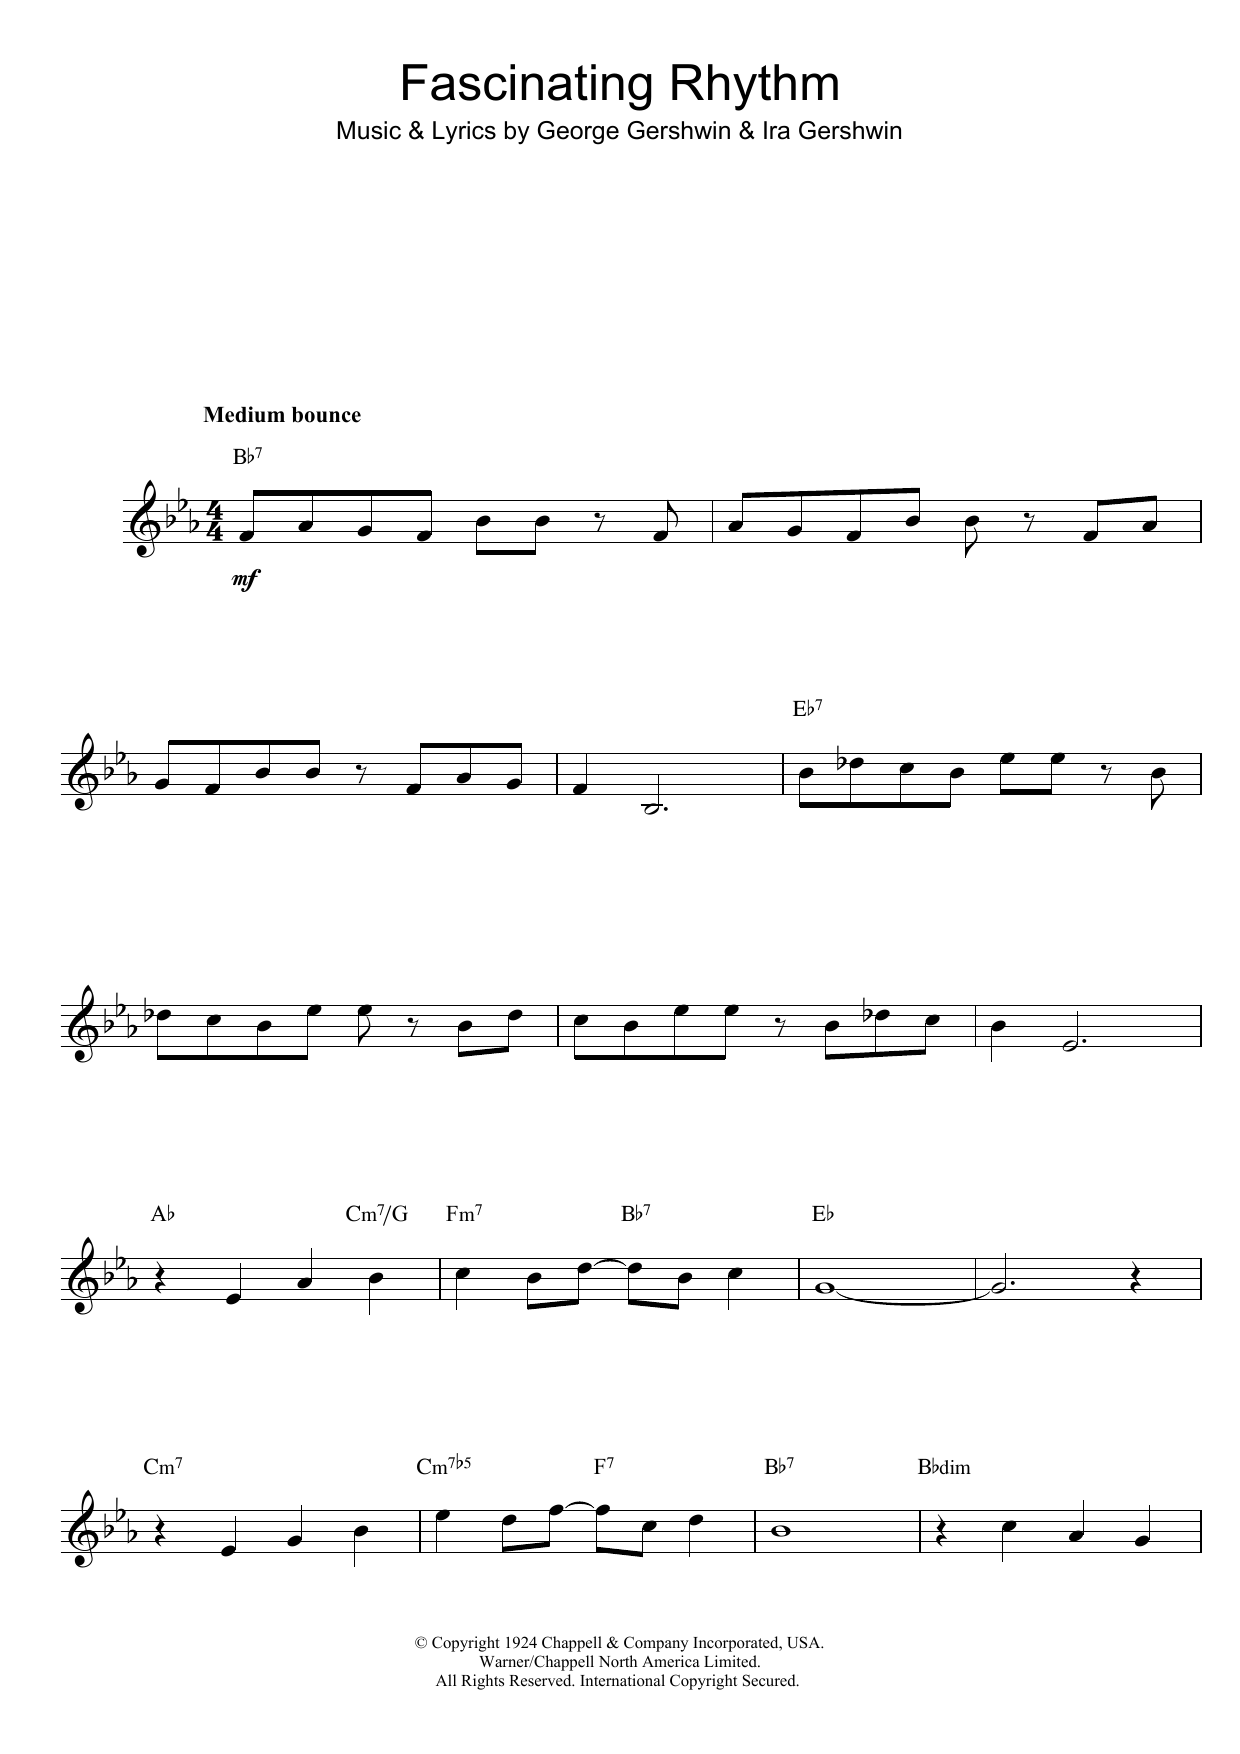 Download George Gershwin Fascinating Rhythm Sheet Music